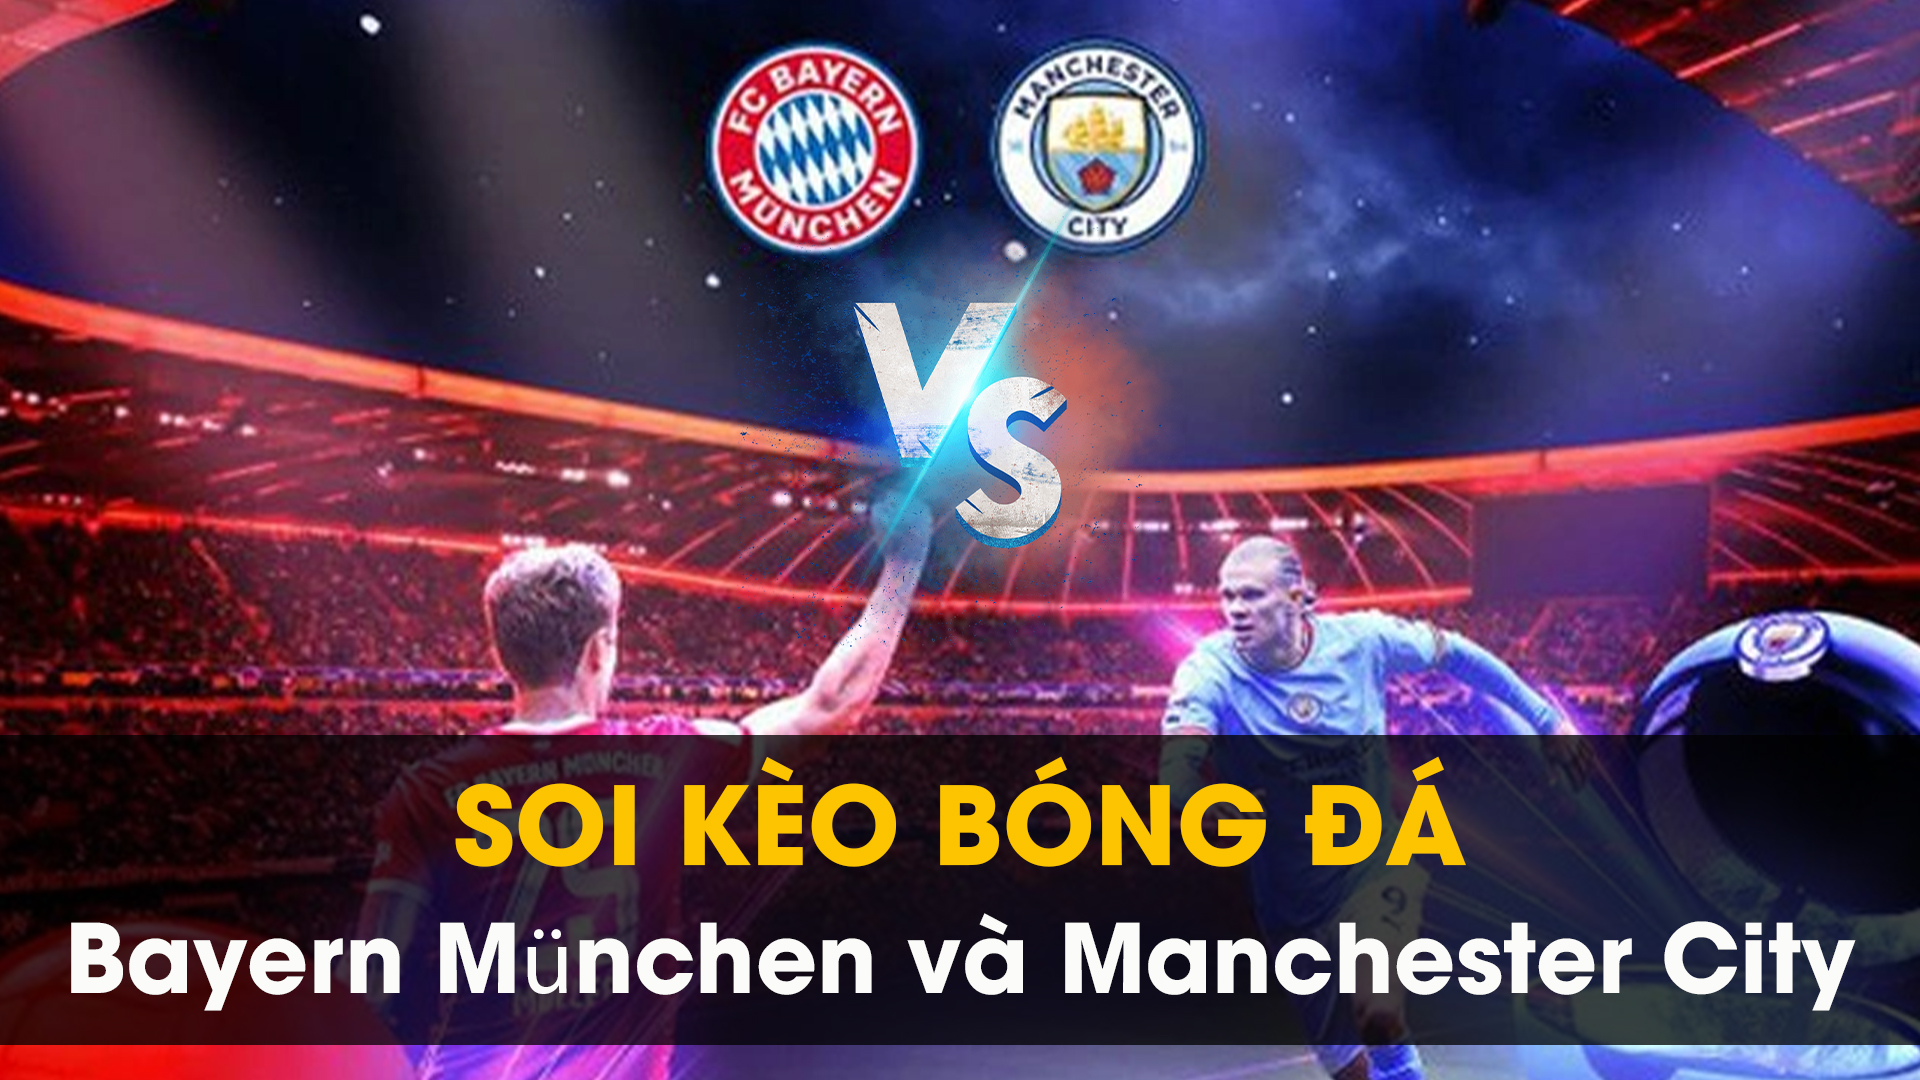 Soi kèo bóng đá giữa Manchester City và Bayern München 01